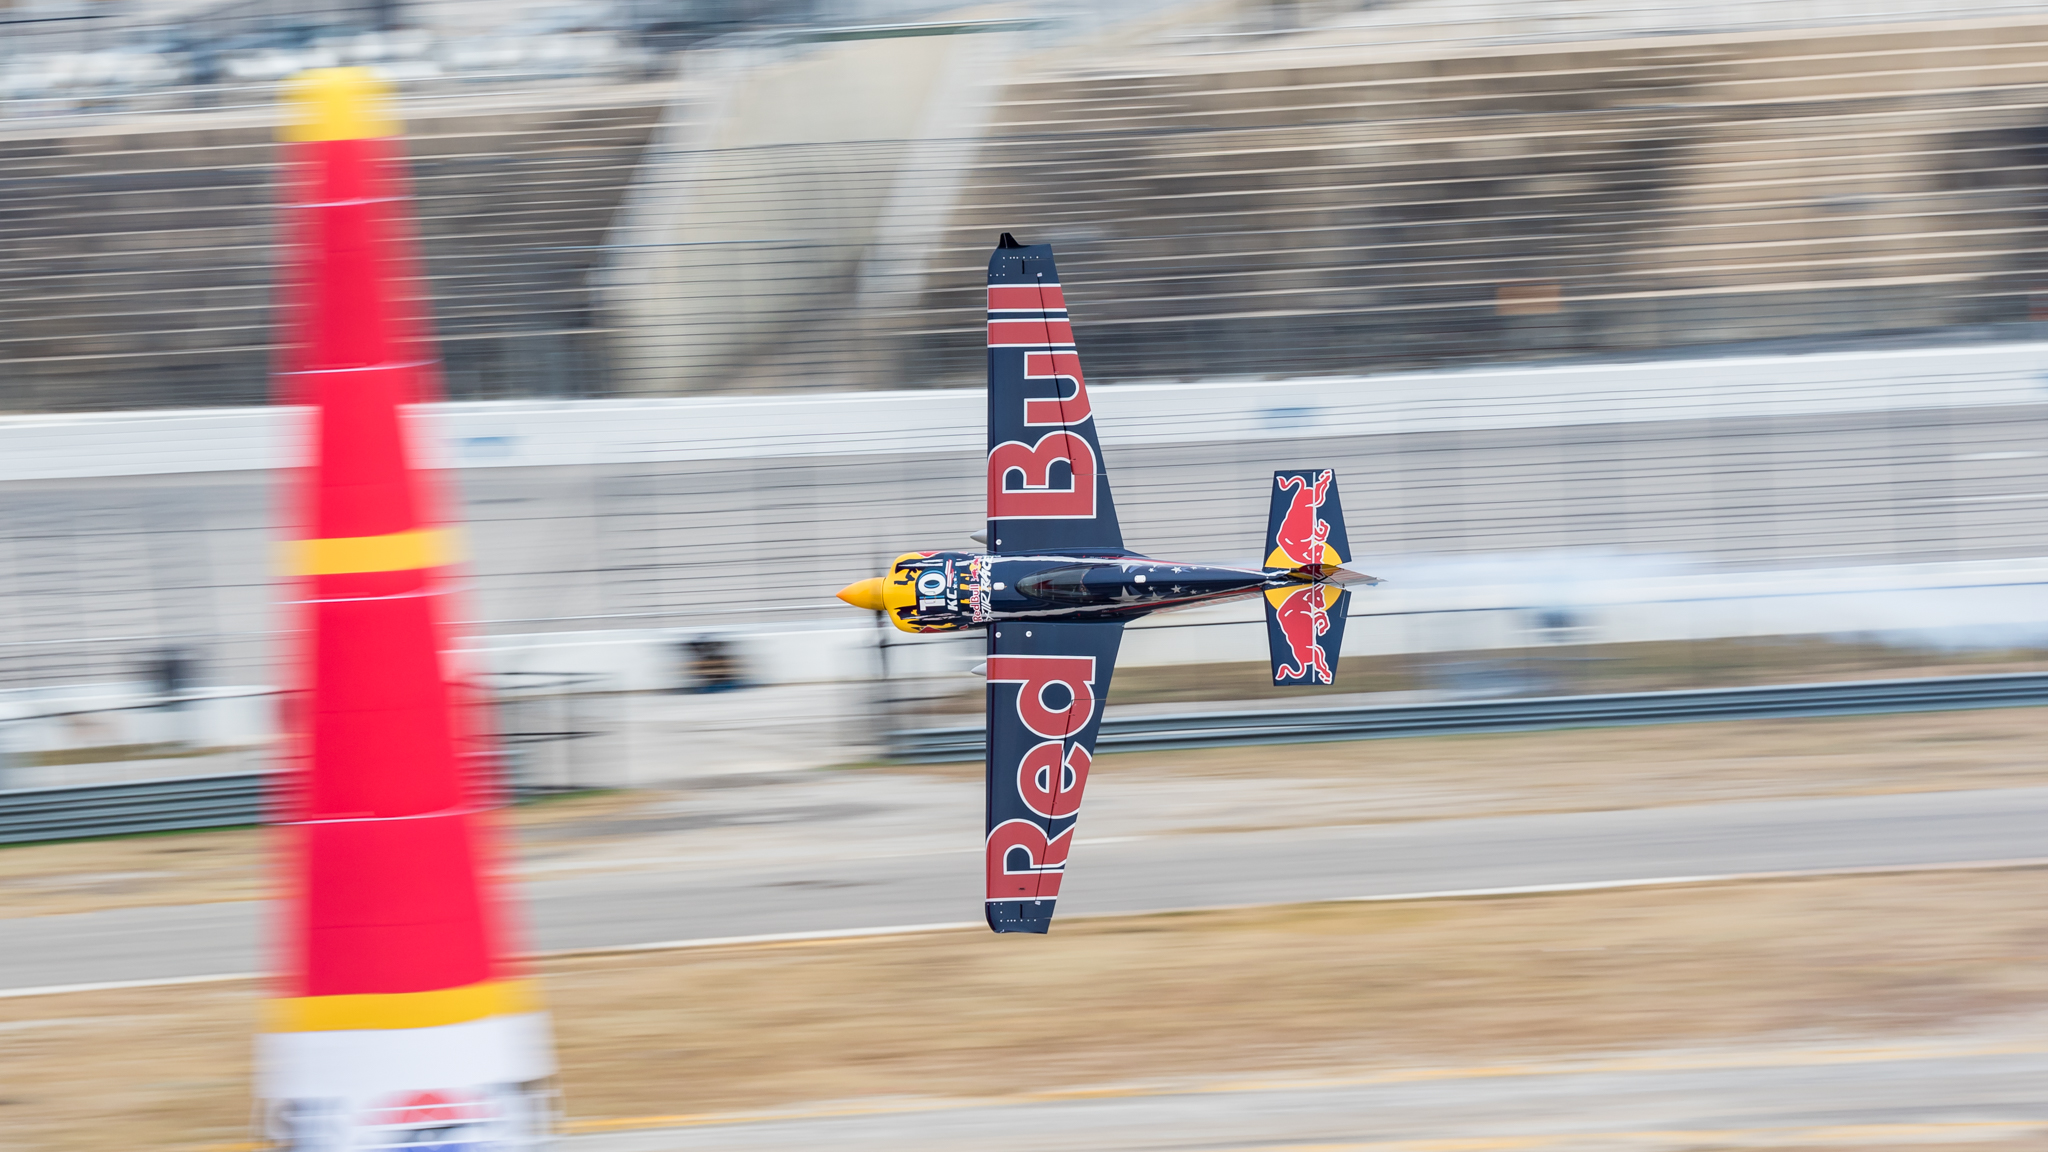 Hamilton Watches Red Bull Air Race